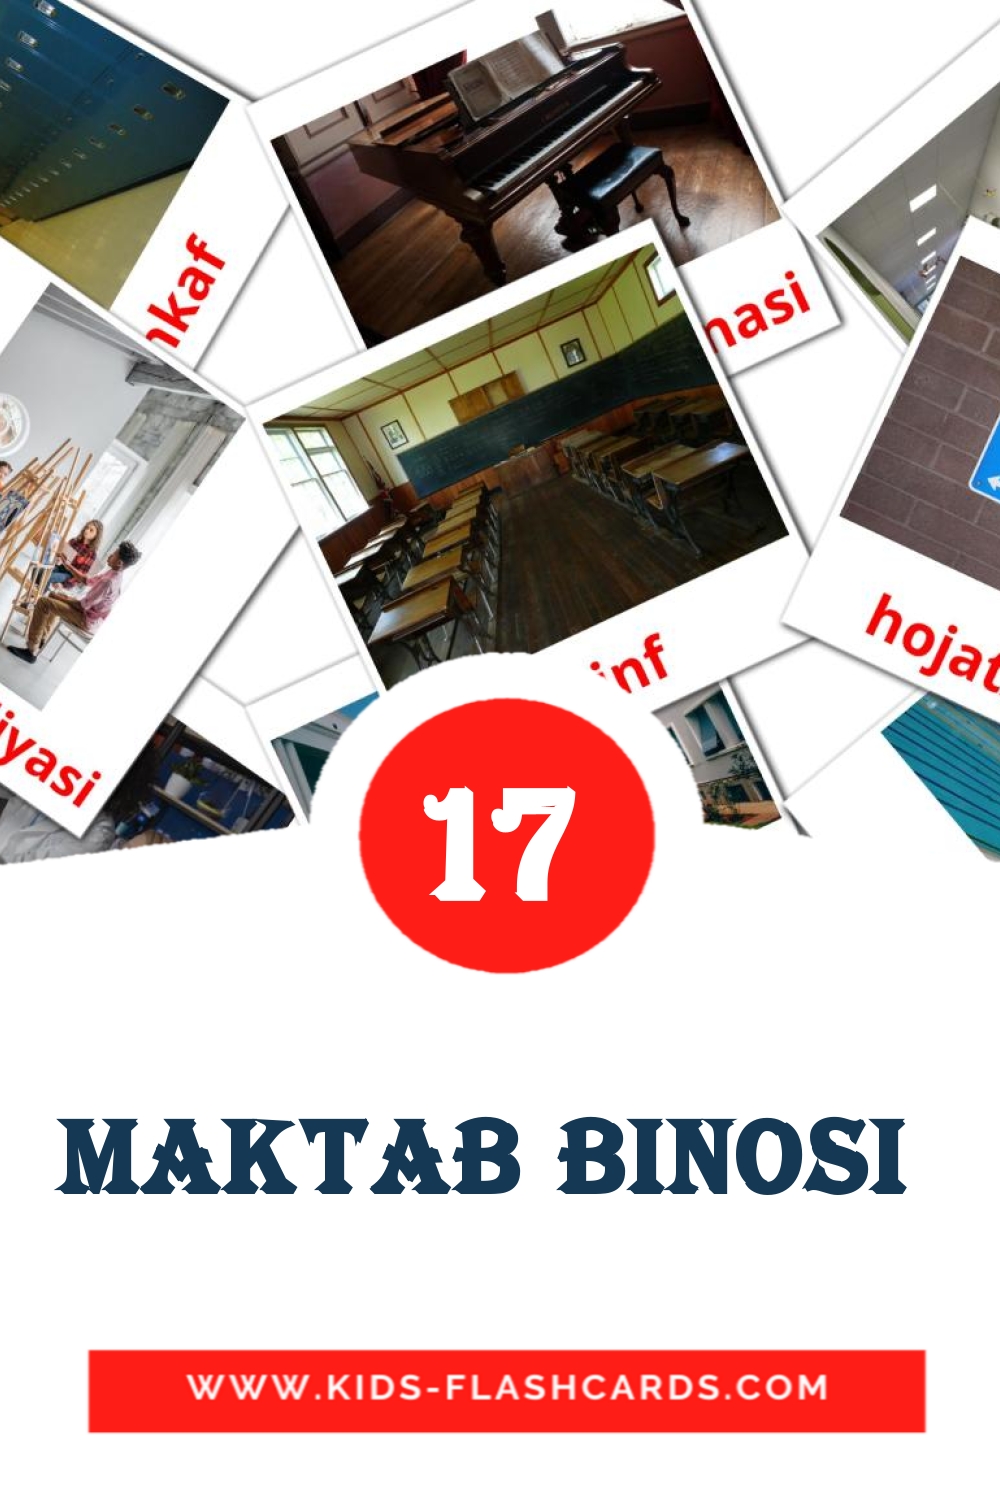 17 carte illustrate di maktab binosi  per la scuola materna in uzbek